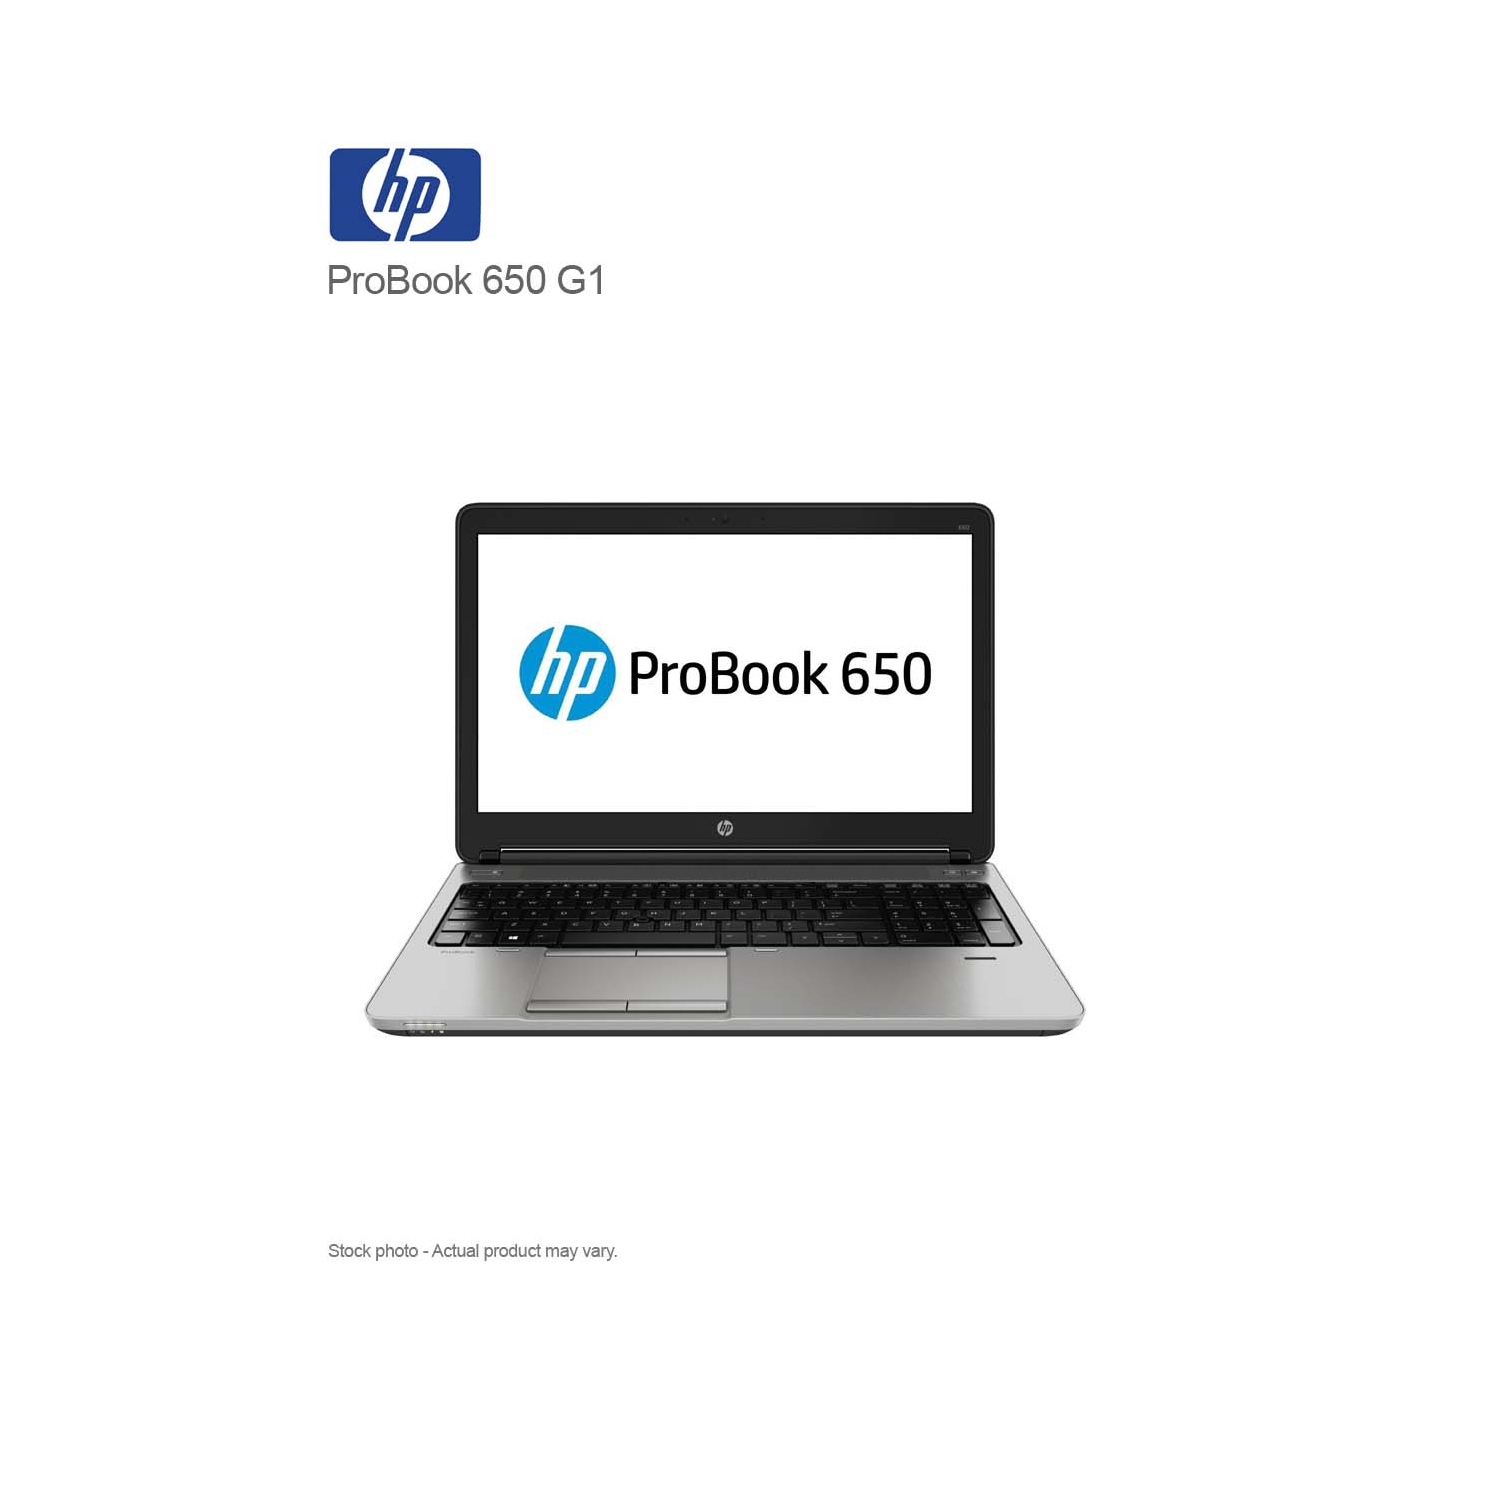 Refurbished (Good) - HP ProBook 650 G1 Intel Core i5-4210M, 8GB RAM, 320GB HDD, 15.6″ HD, WIN 10 PRO